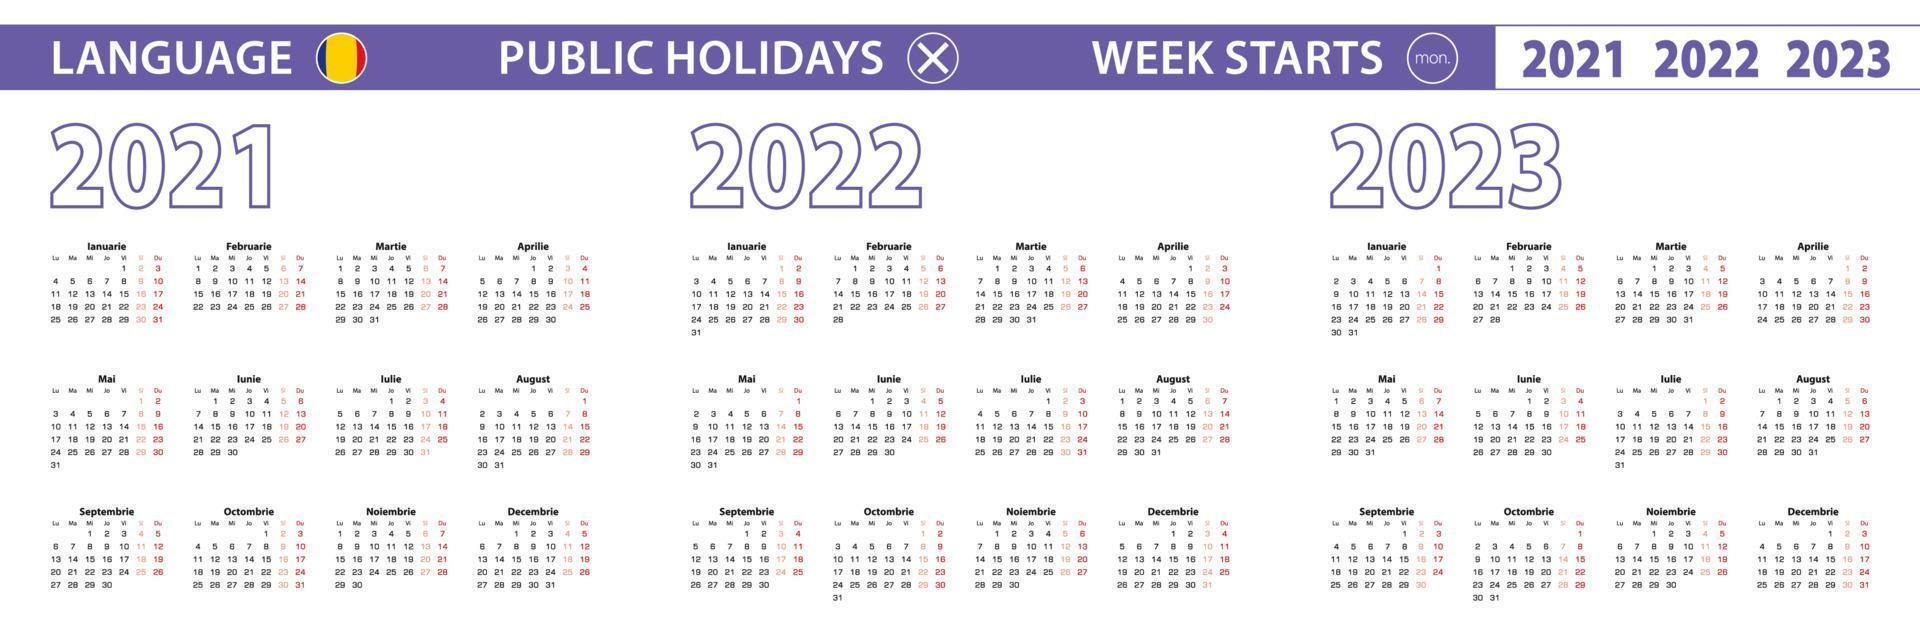 enkel kalendermall på rumänska för 2021, 2022, 2023 år. veckan börjar från måndag. vektor